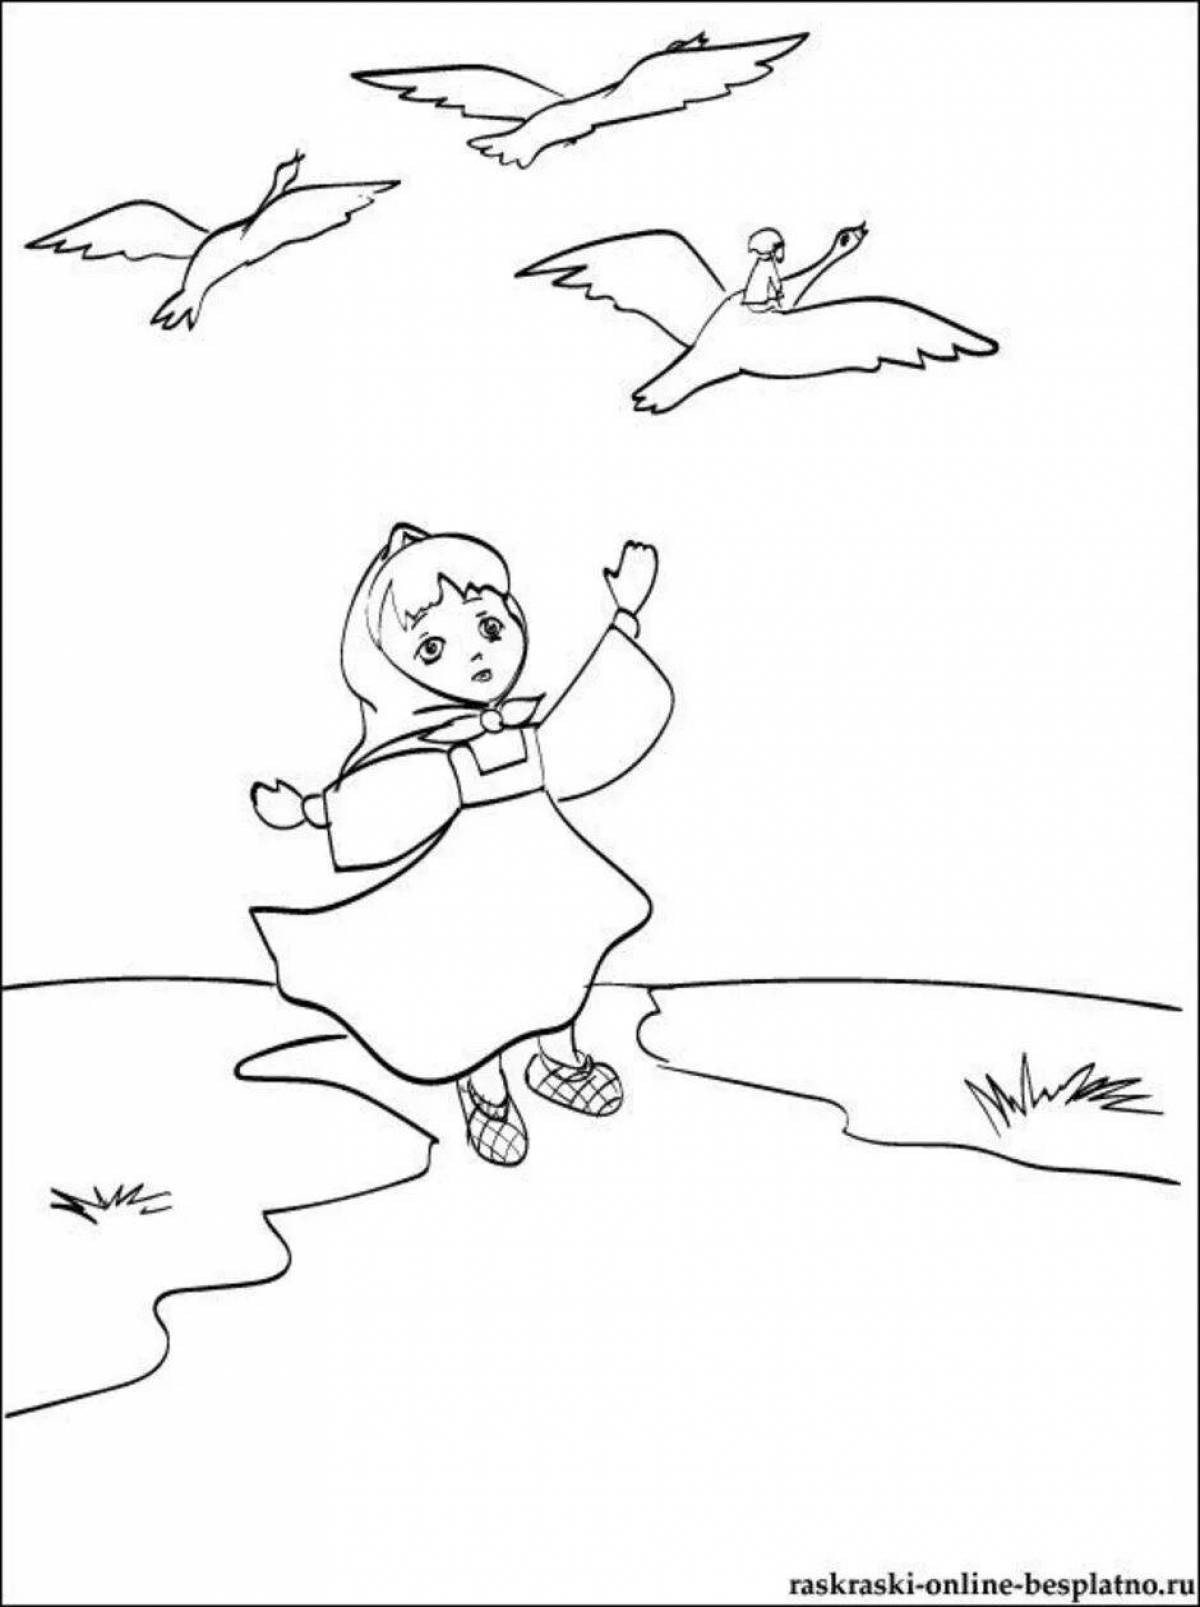 Гуси лебеди рисунок для детей 1 класса. Рисунок по сказке гуси лебеди. Рисунок к сказке гуси лебеди 2 класс. Рисунок к сказке гуси лебеди 2 класс для детей. Раскраска "гуси-лебеди".